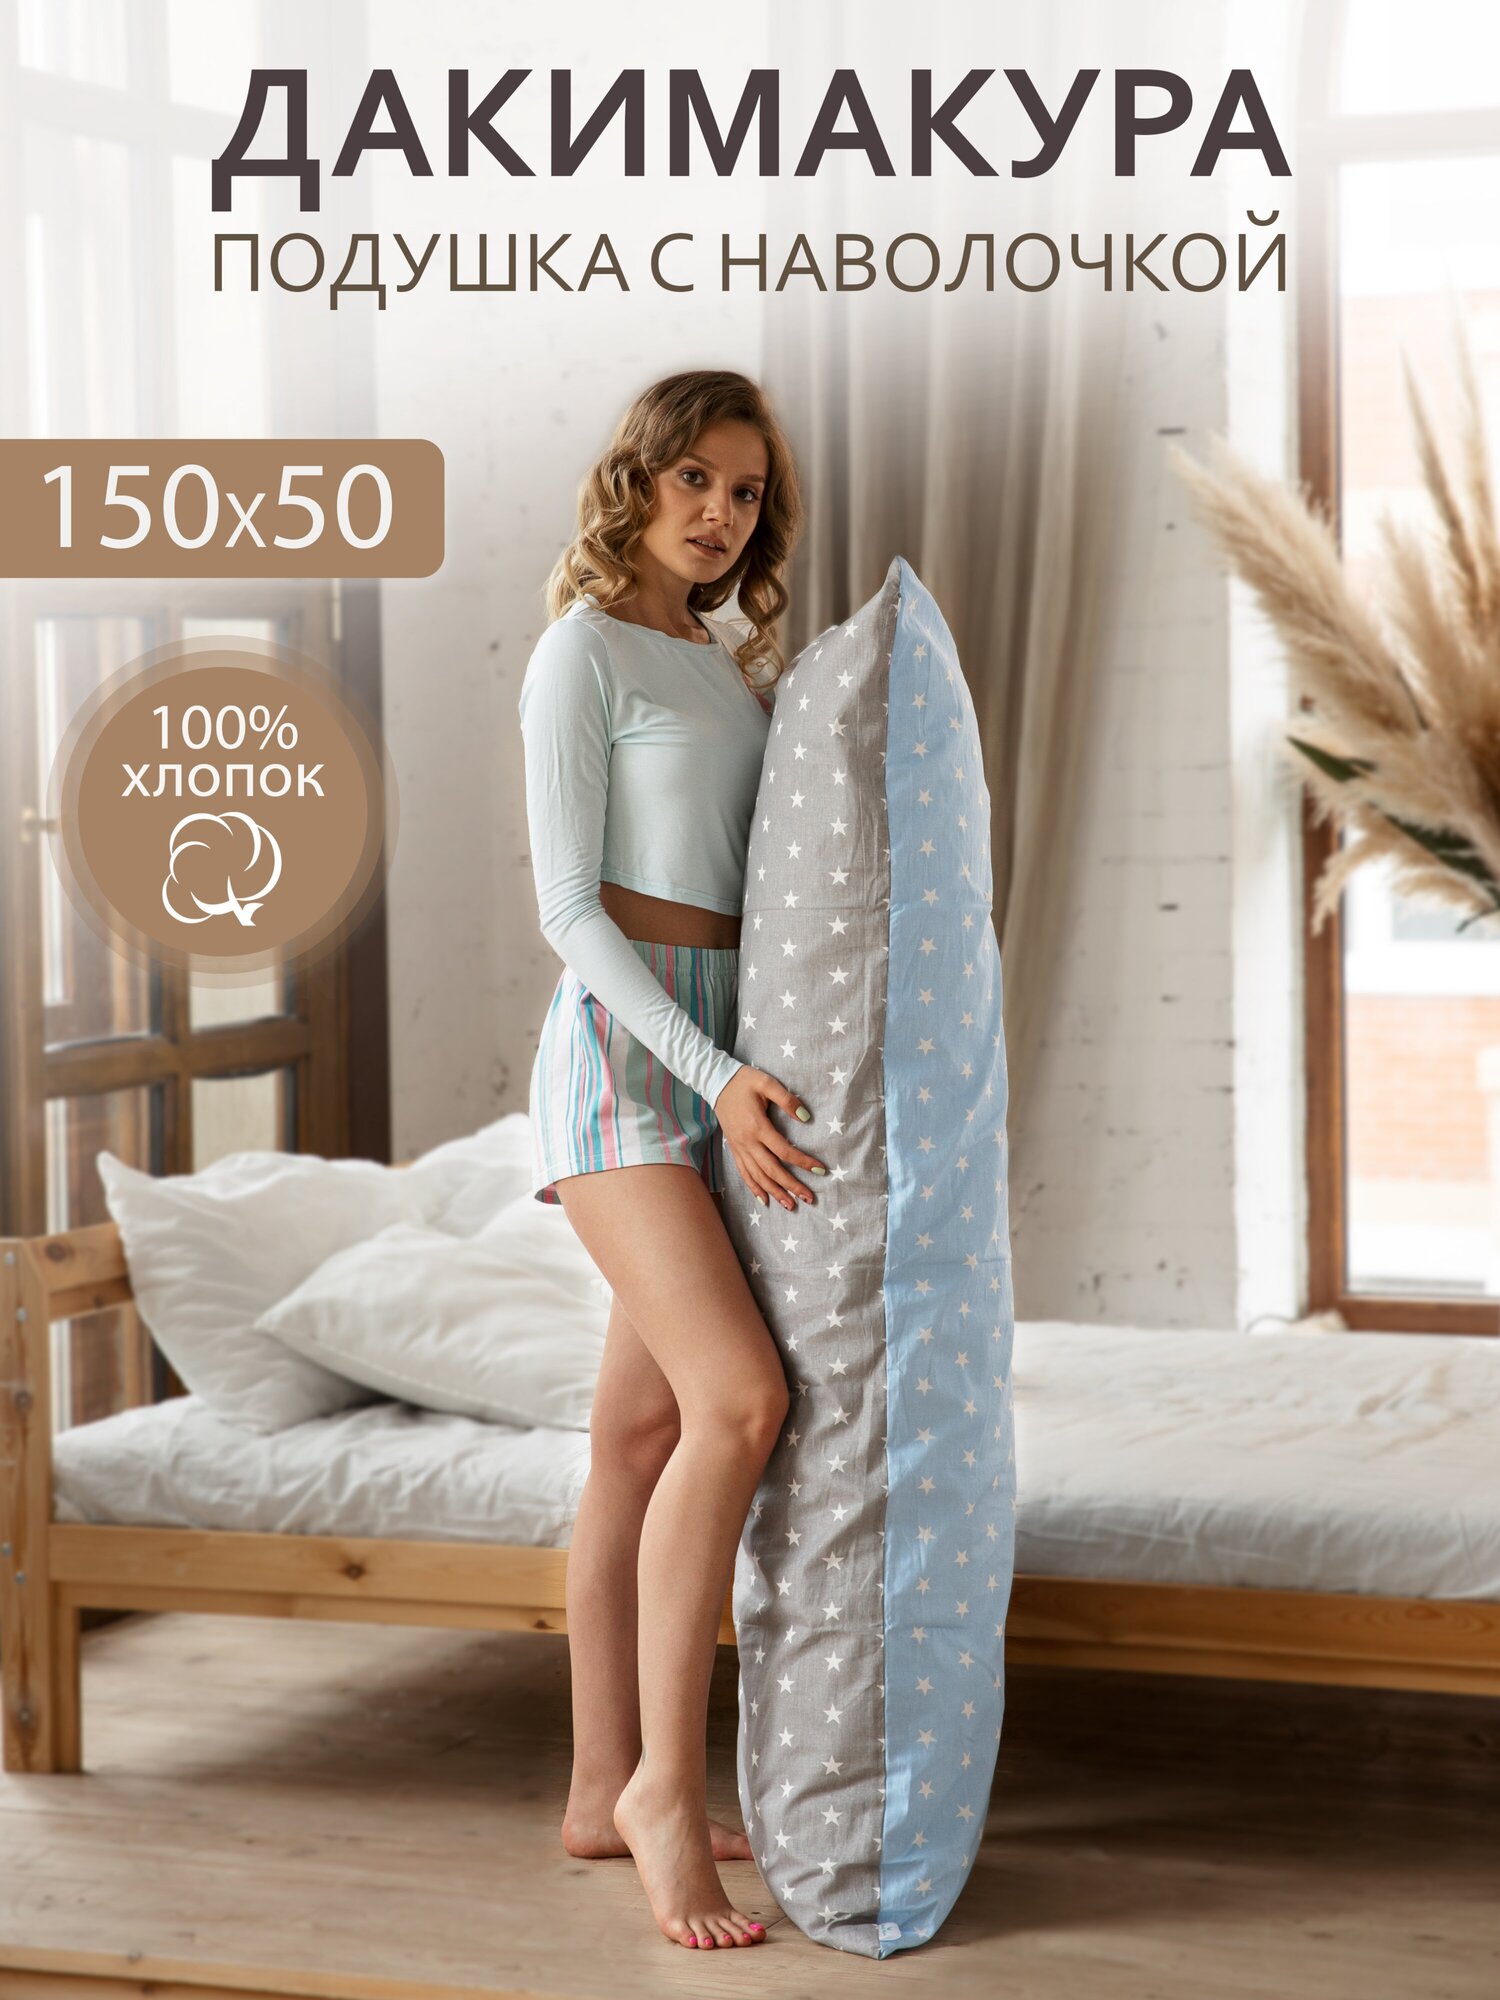 Body Pillow Подушка для сна 150х50 см / Дакимакура / со съёмной наволочкой "Звезды серый-голубой"